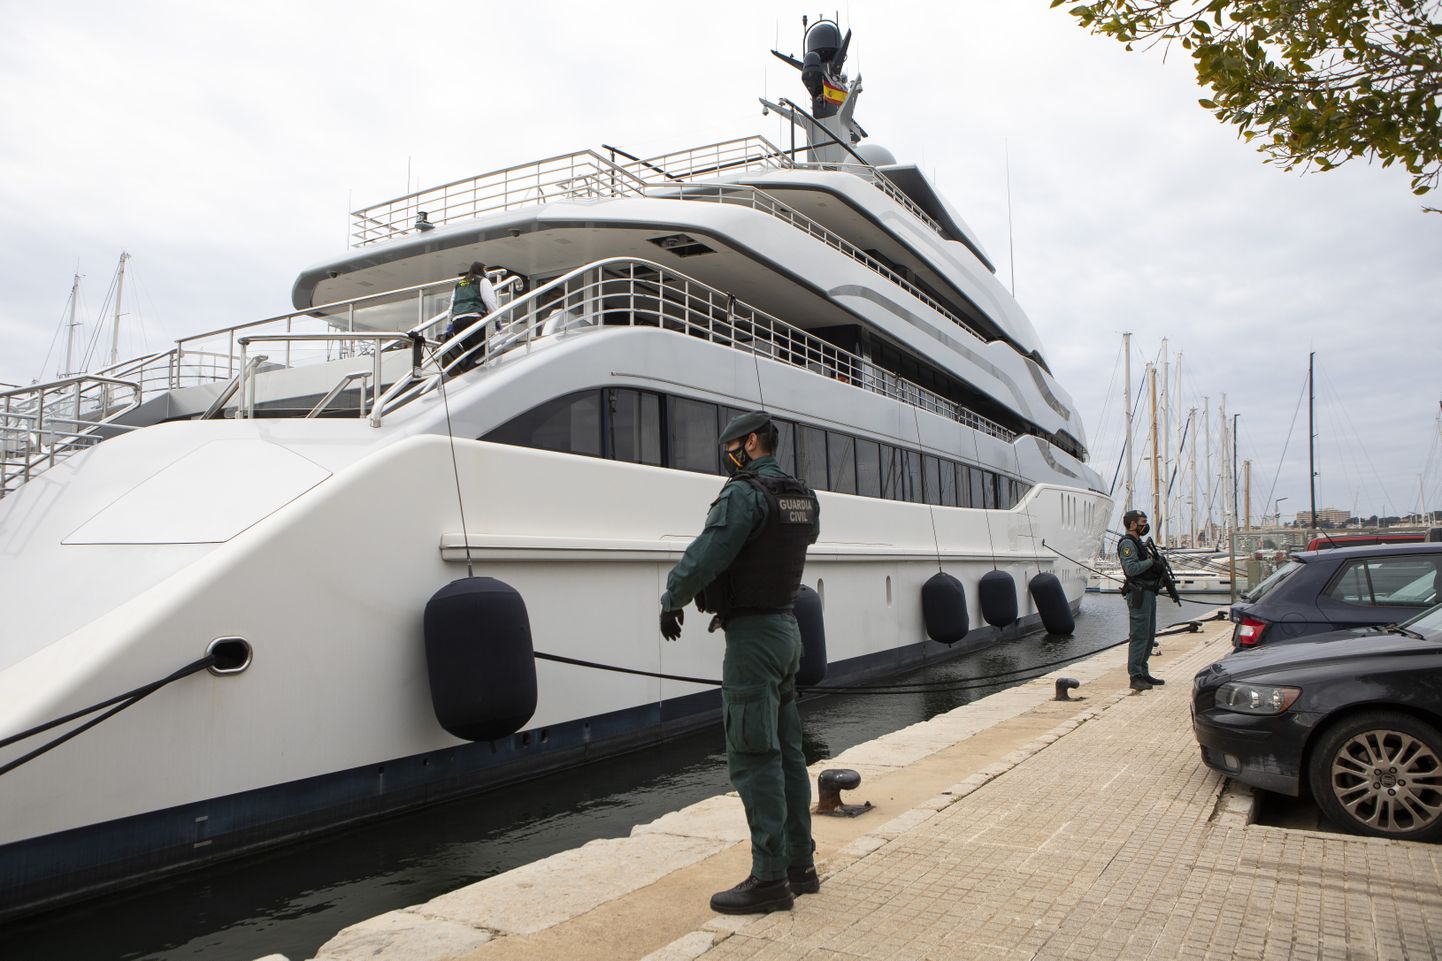 Апрель 2022 года. Федеральные агенты США и гражданская гвардия Испании обыскивают яхту Tango, принадлежащую российскому олигарху Виктору Вексельбергу.